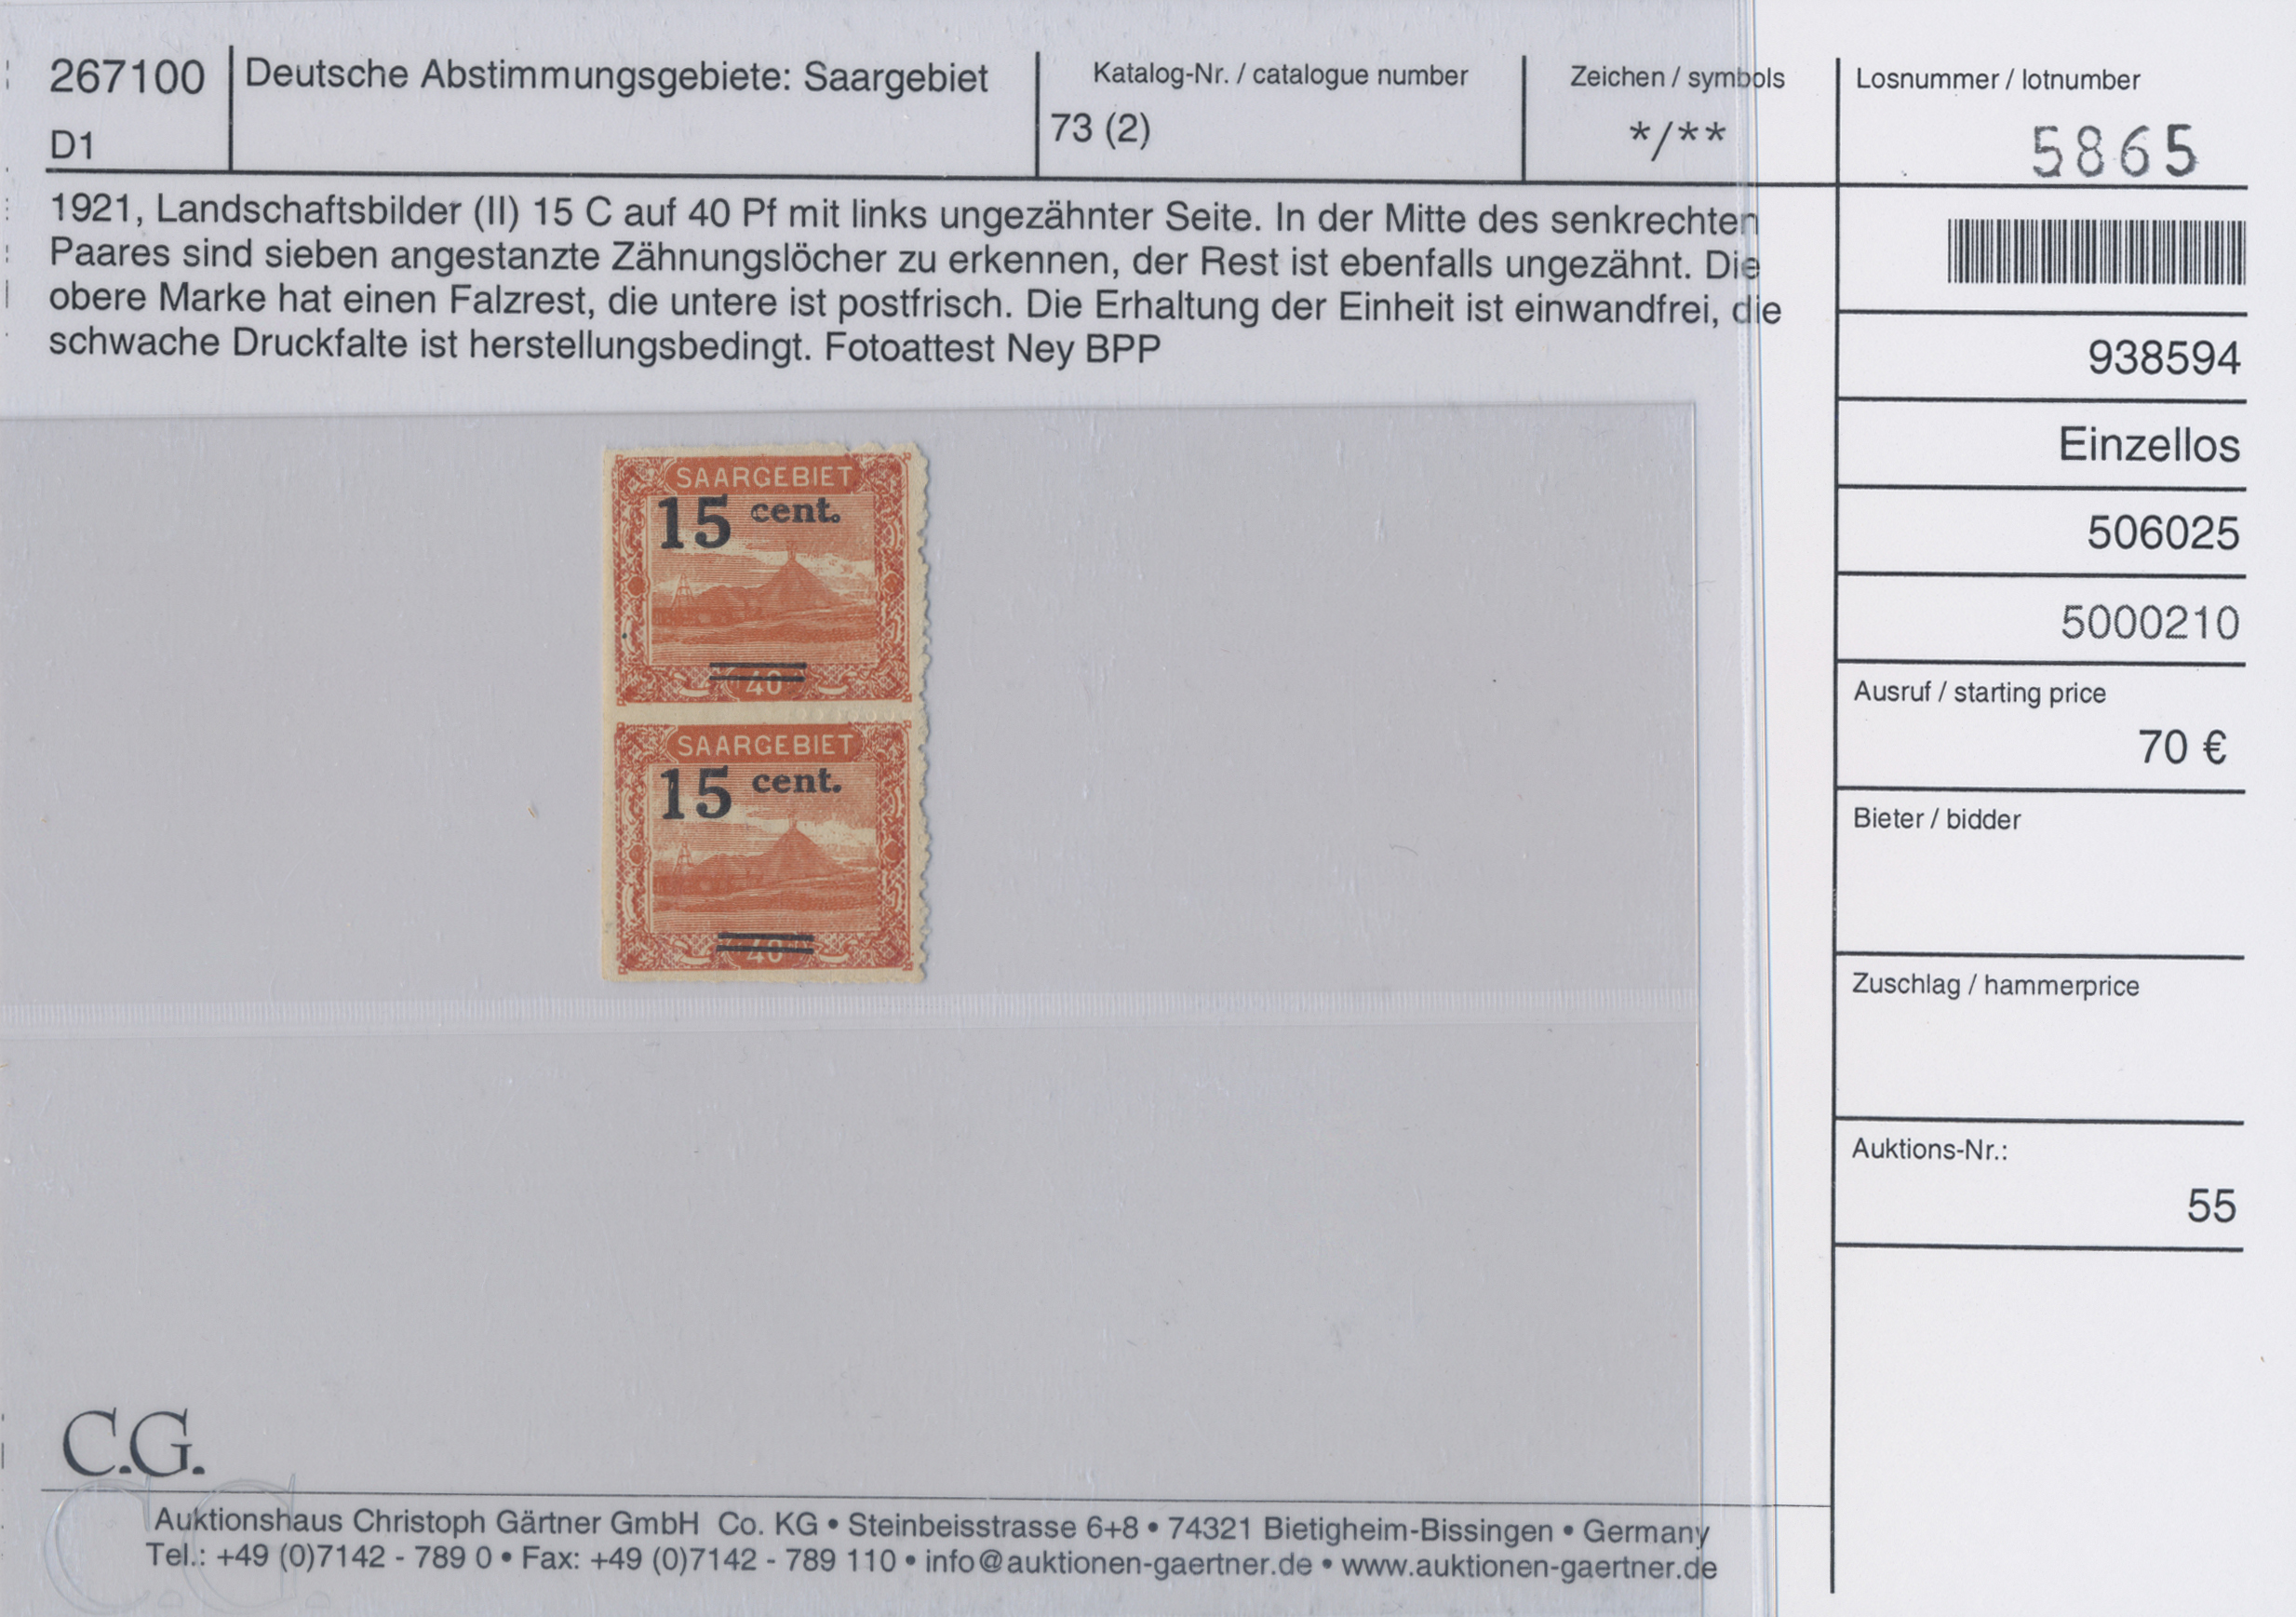 Lot 11366 - Deutsche Abstimmungsgebiete: Saargebiet  -  Auktionshaus Christoph Gärtner GmbH & Co. KG 56th AUCTION - Day 5